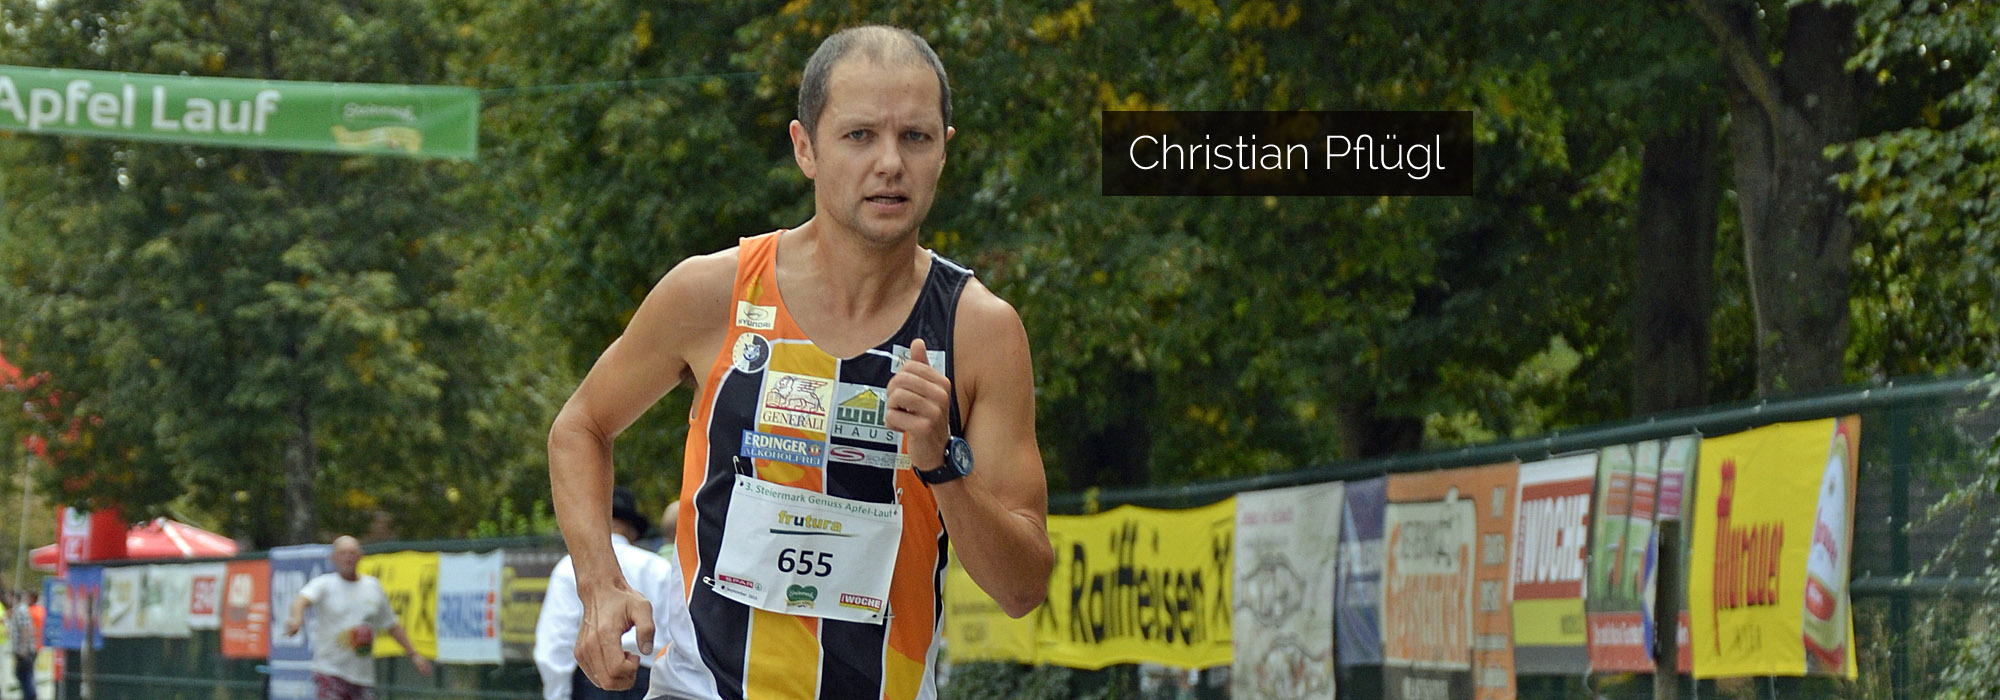 Christian Pflügl - Österreichischer Marathonläufer